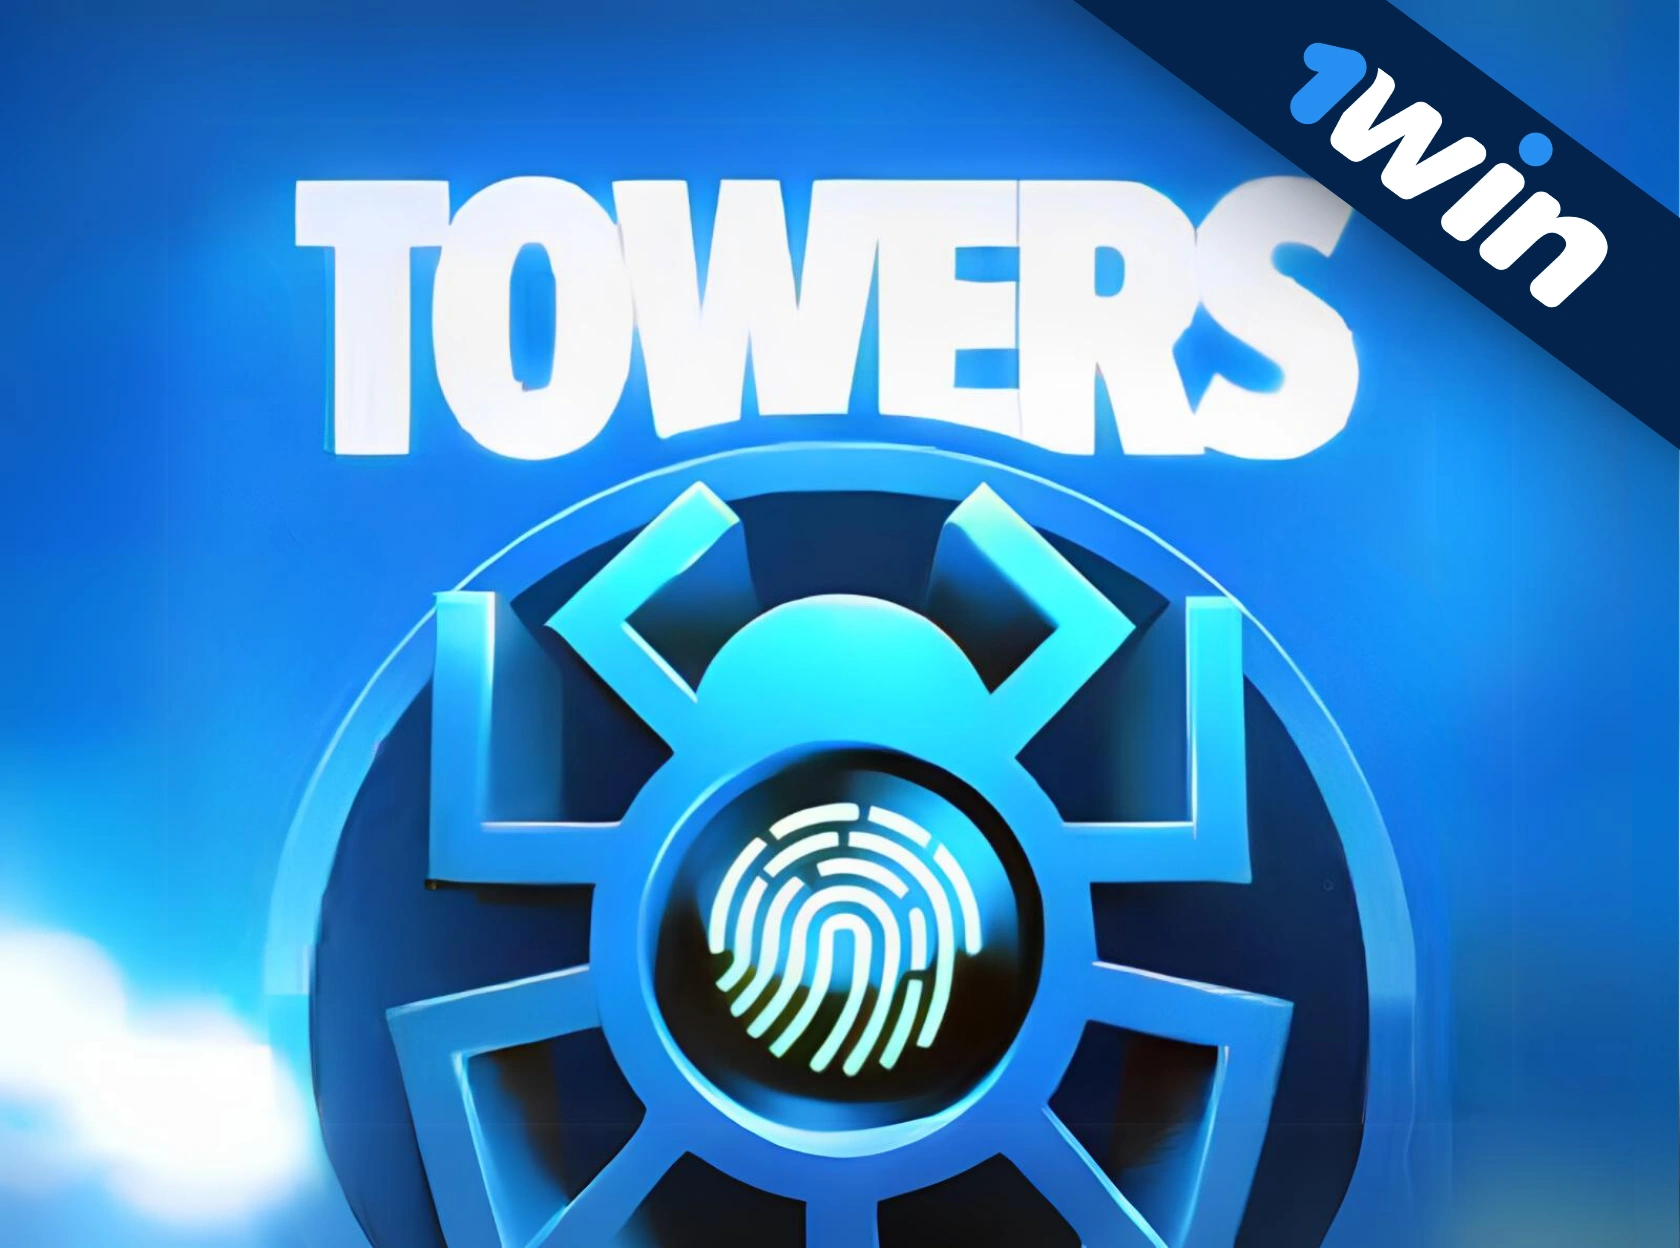 Towers 1win — новая эксклюзивная игра!